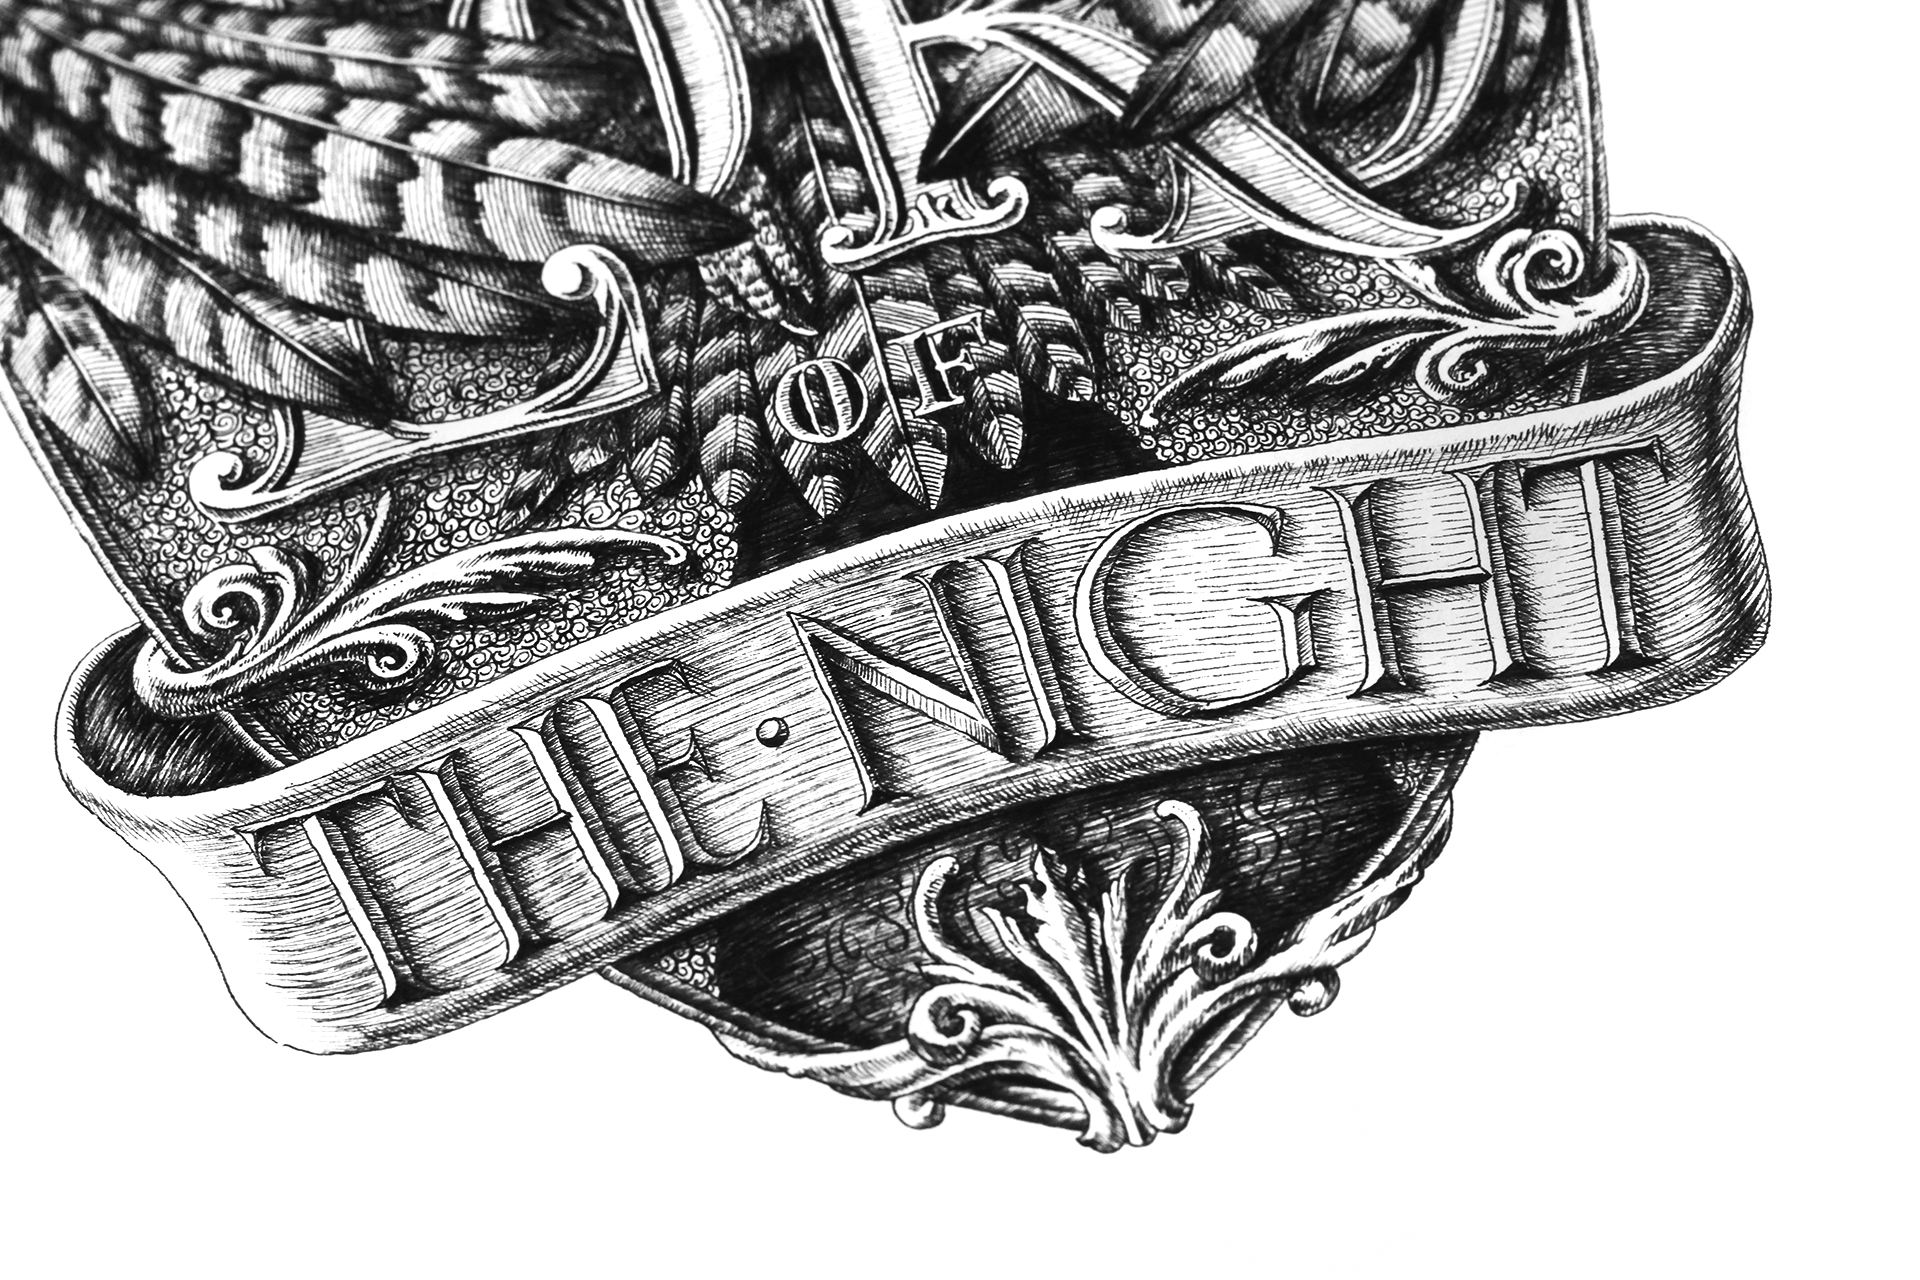 Tác phẩm “The lord of the night” bằng bút mực trên nền giấy Bockingford